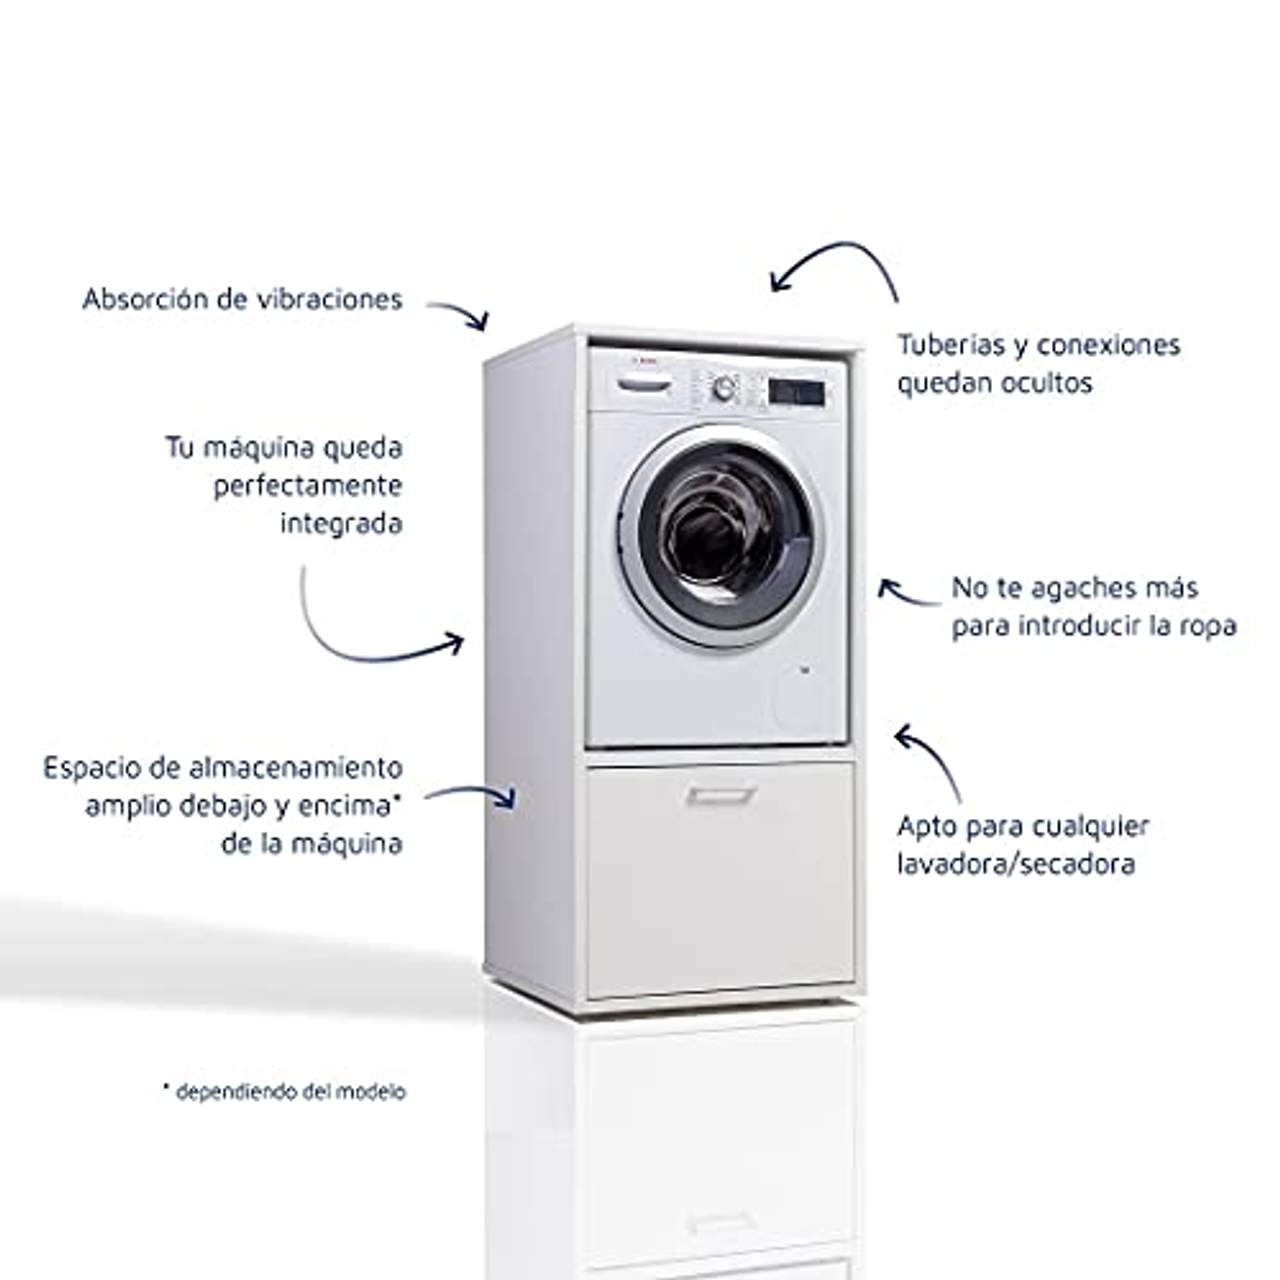 Waschturm Waschmaschinenschrank mit Schublade